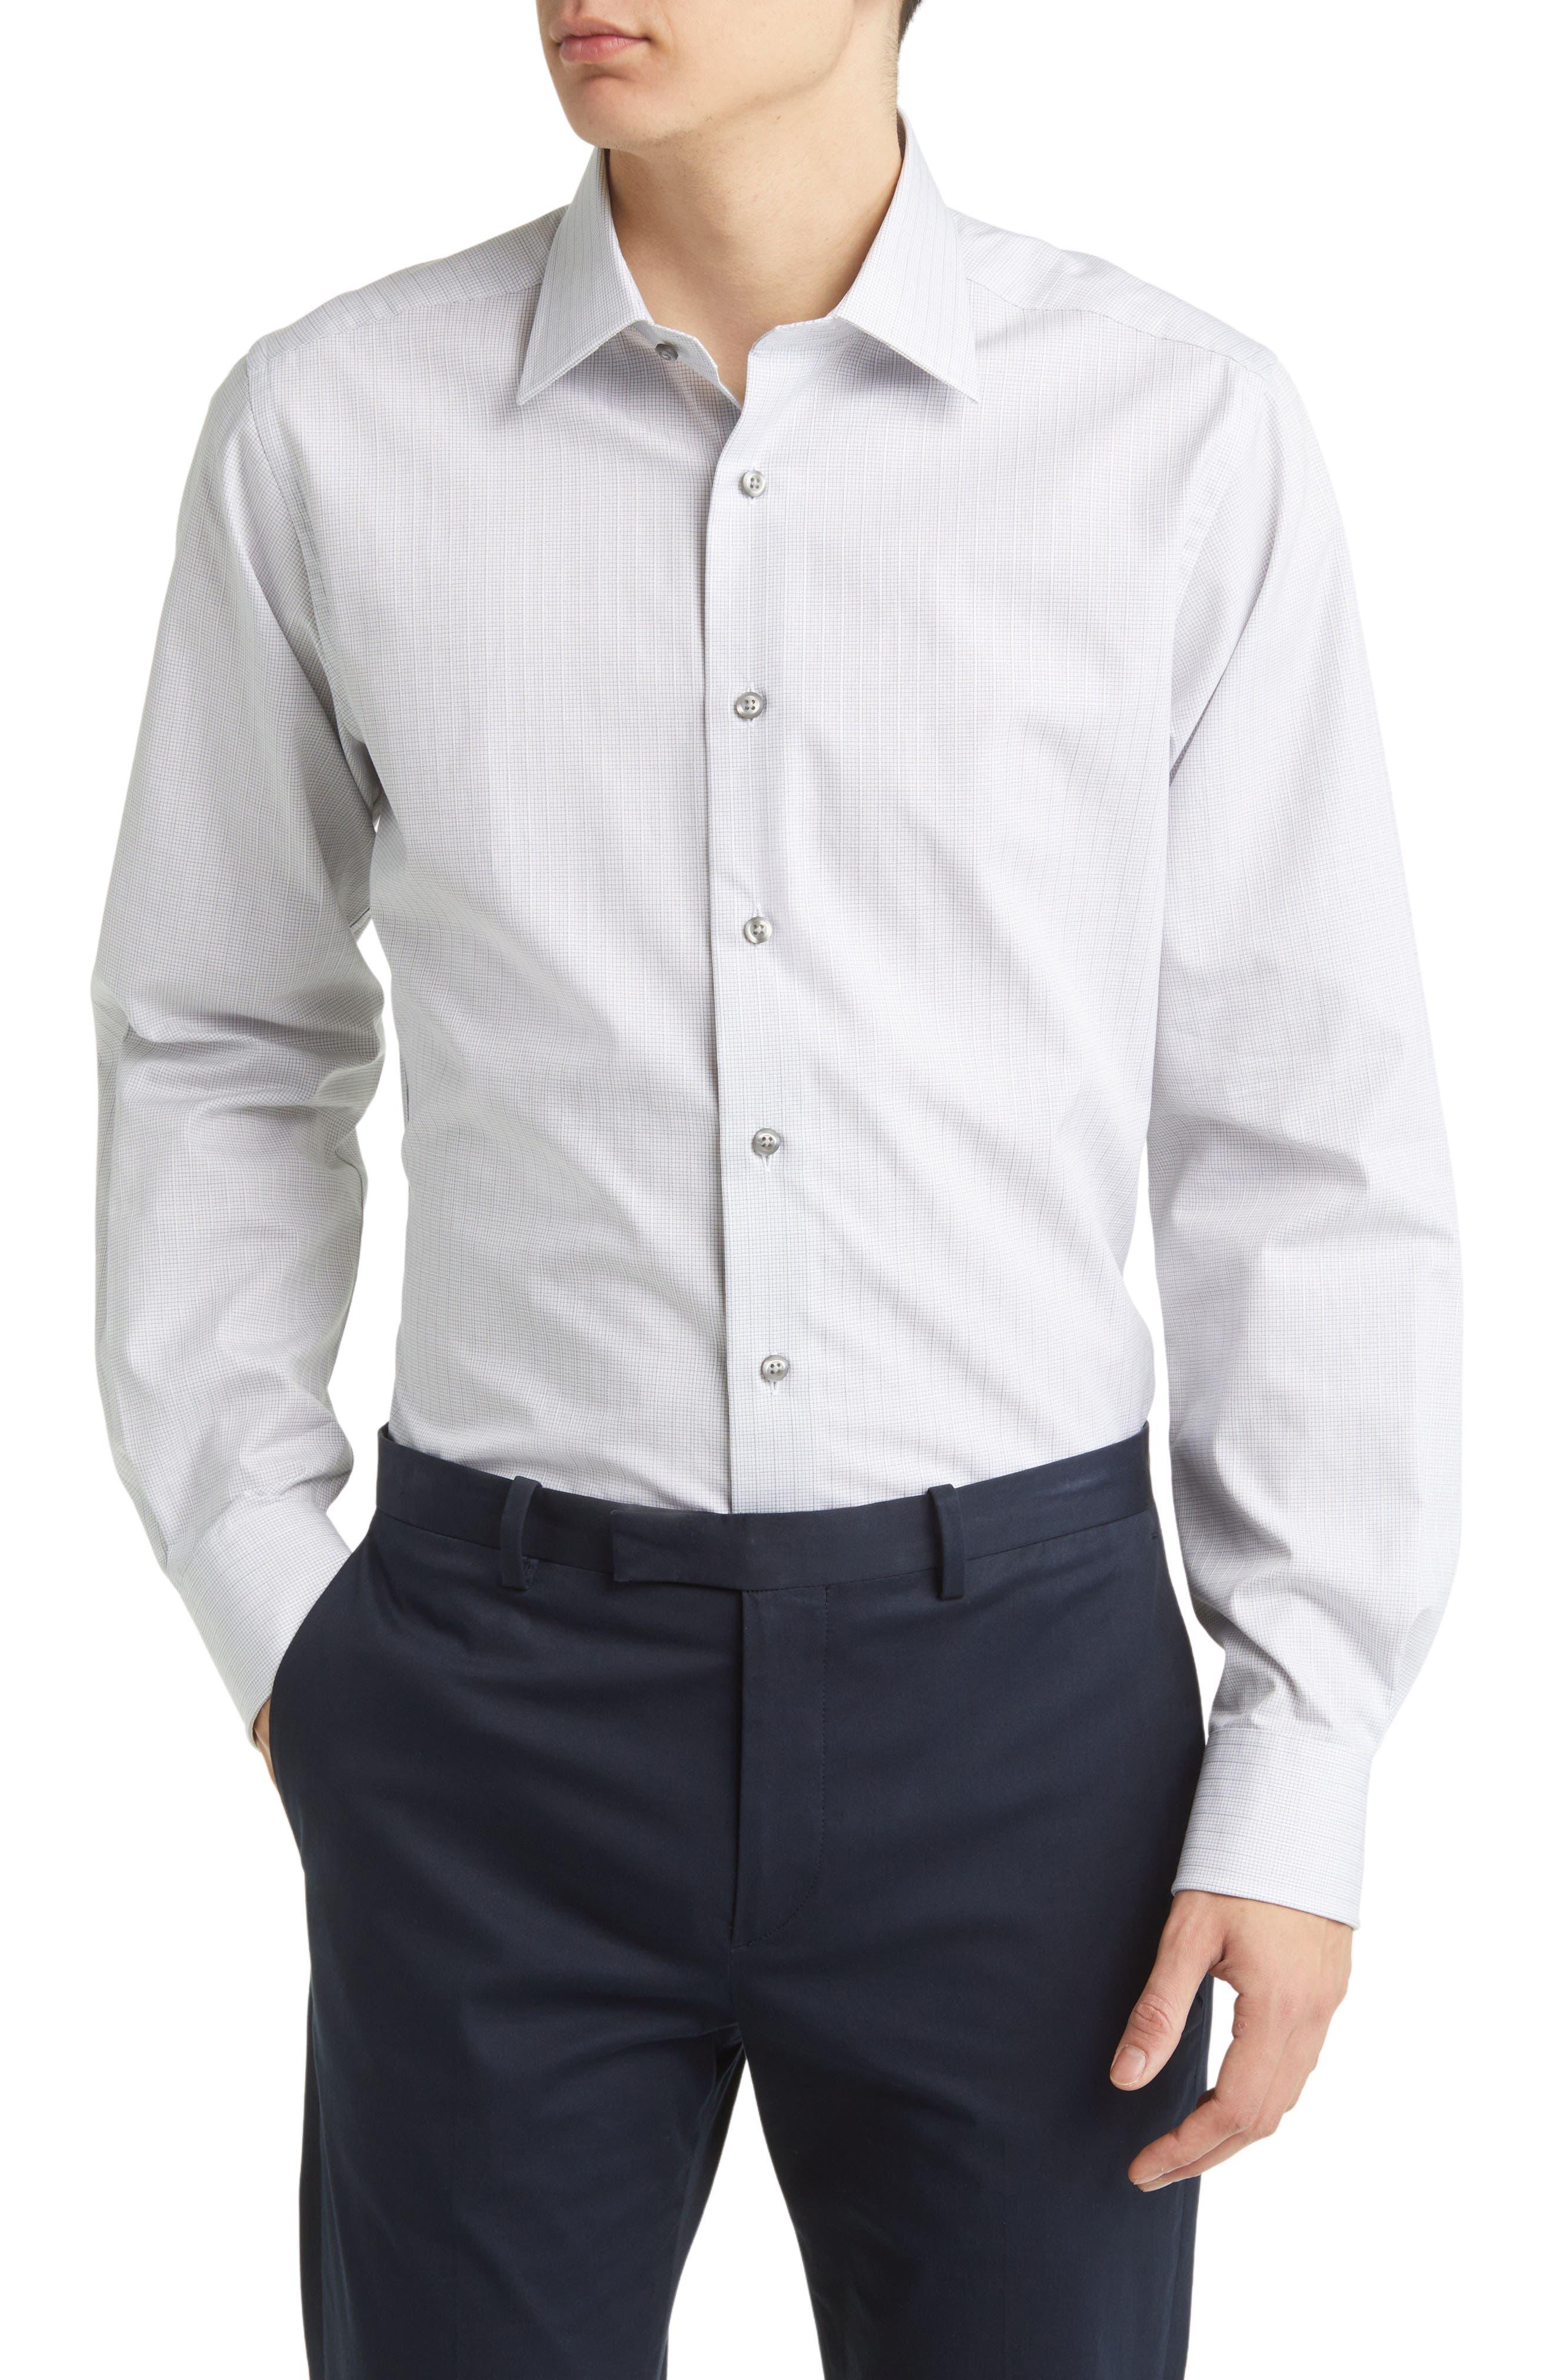 David Donahue Men's Trim-Fit Royal Oxford Dress Shirt - White - Size 16